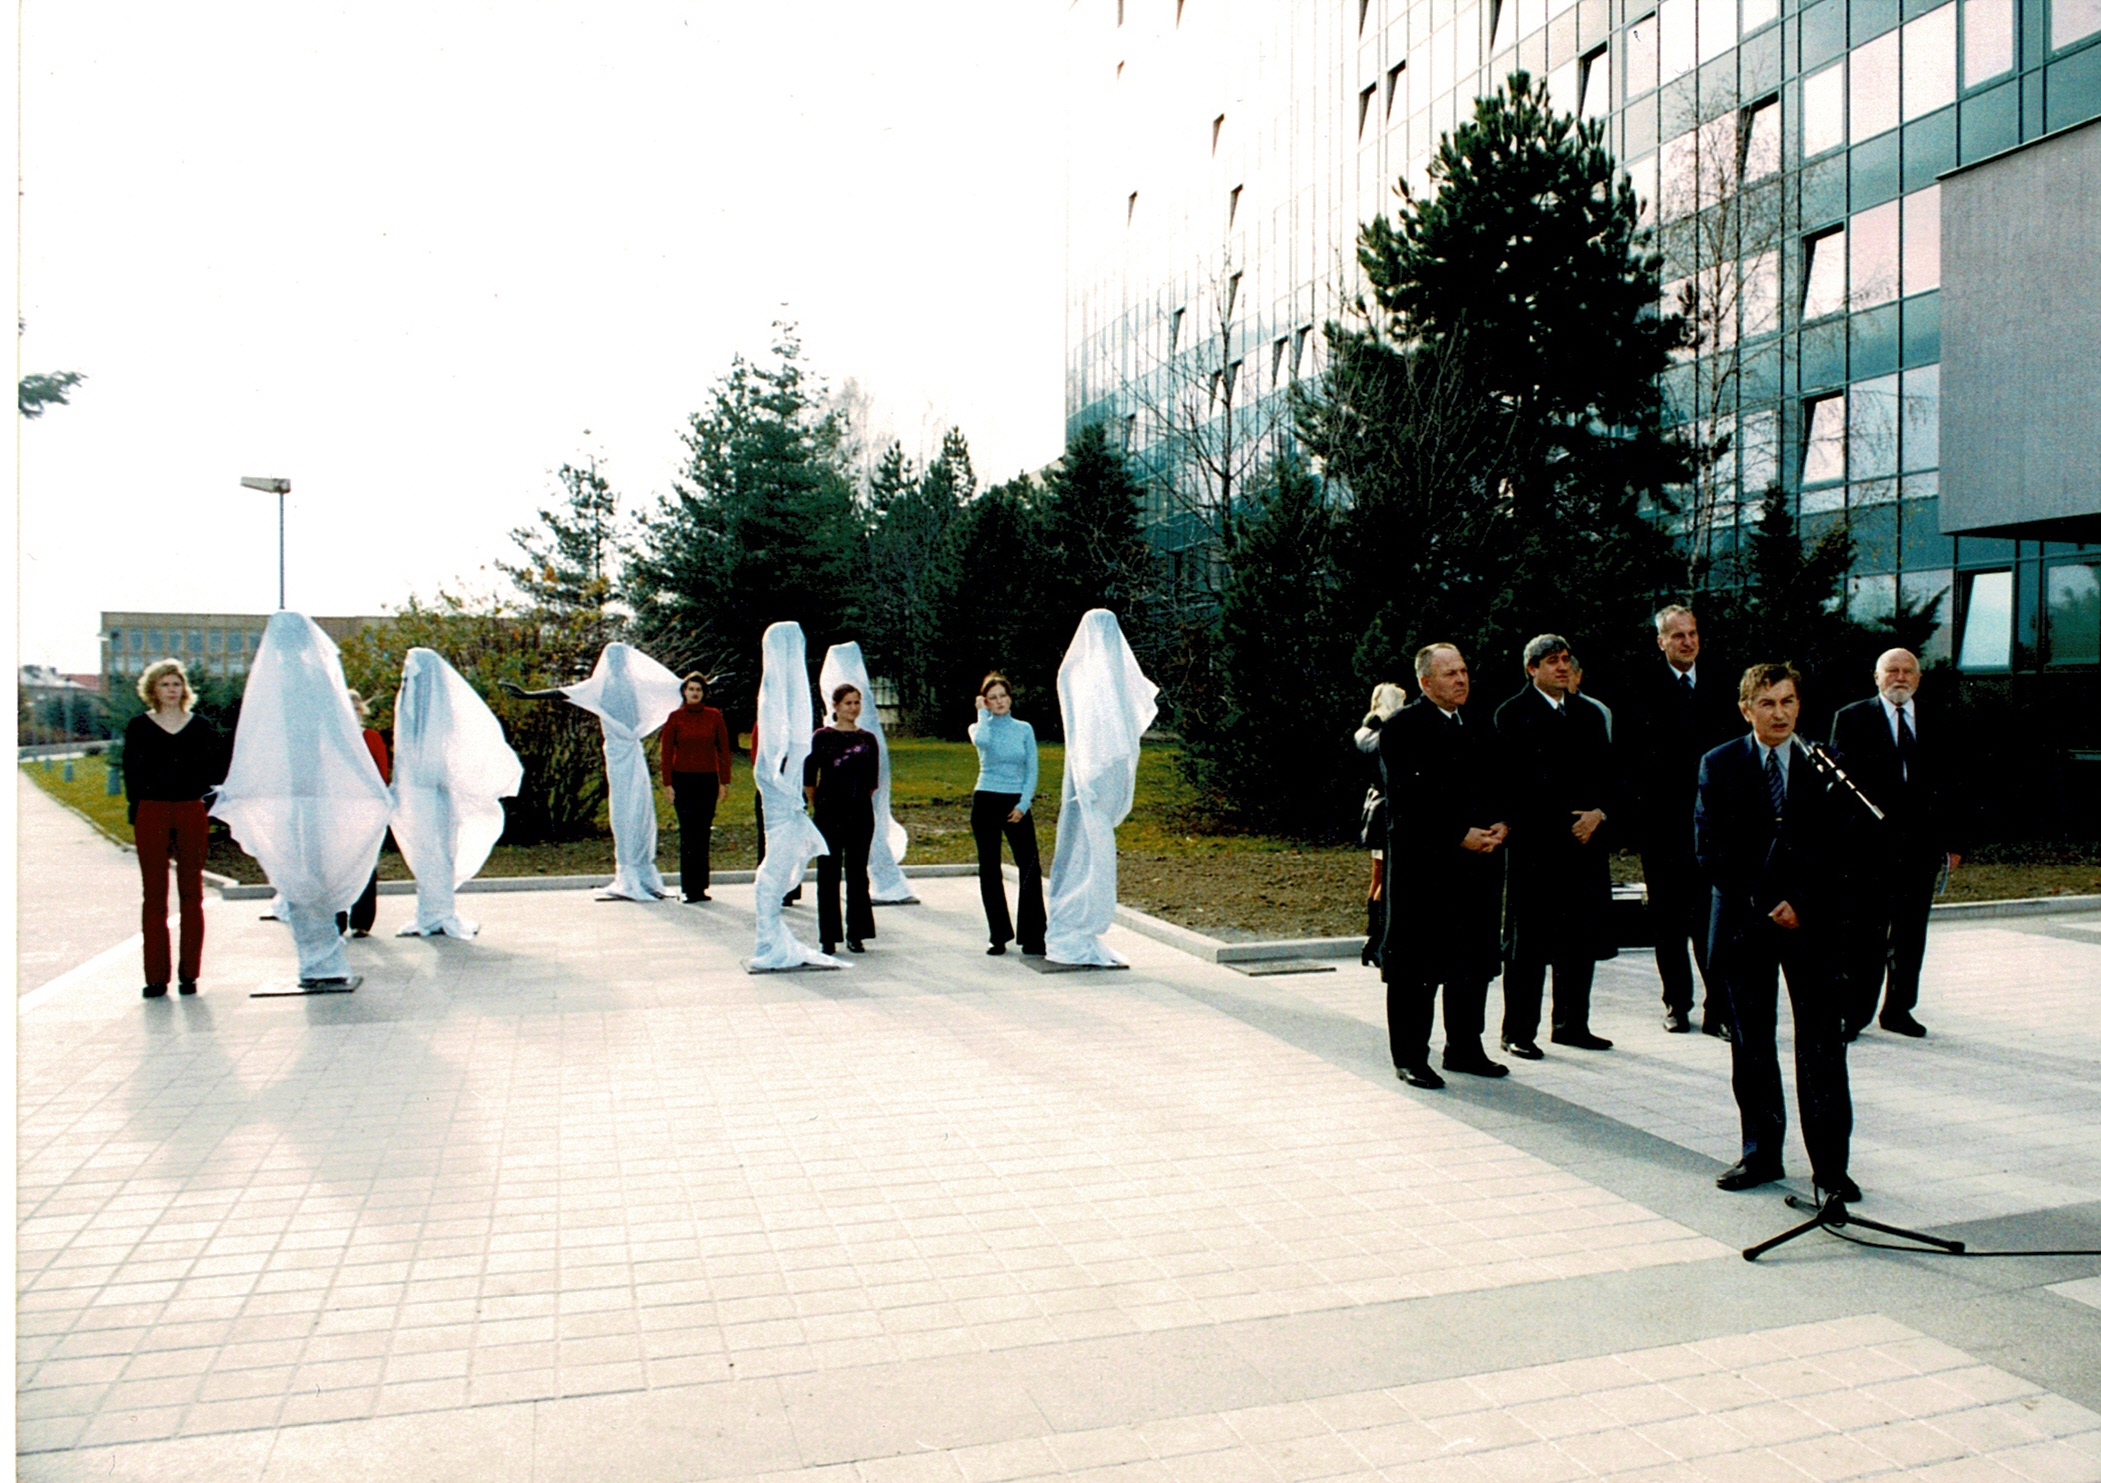 Slavnostní odhalení skupiny soch za přítomnosti autora Olbrama Zoubka 15. 11. 2002, fotografie Josef Polák, archiv VŠB-TUO